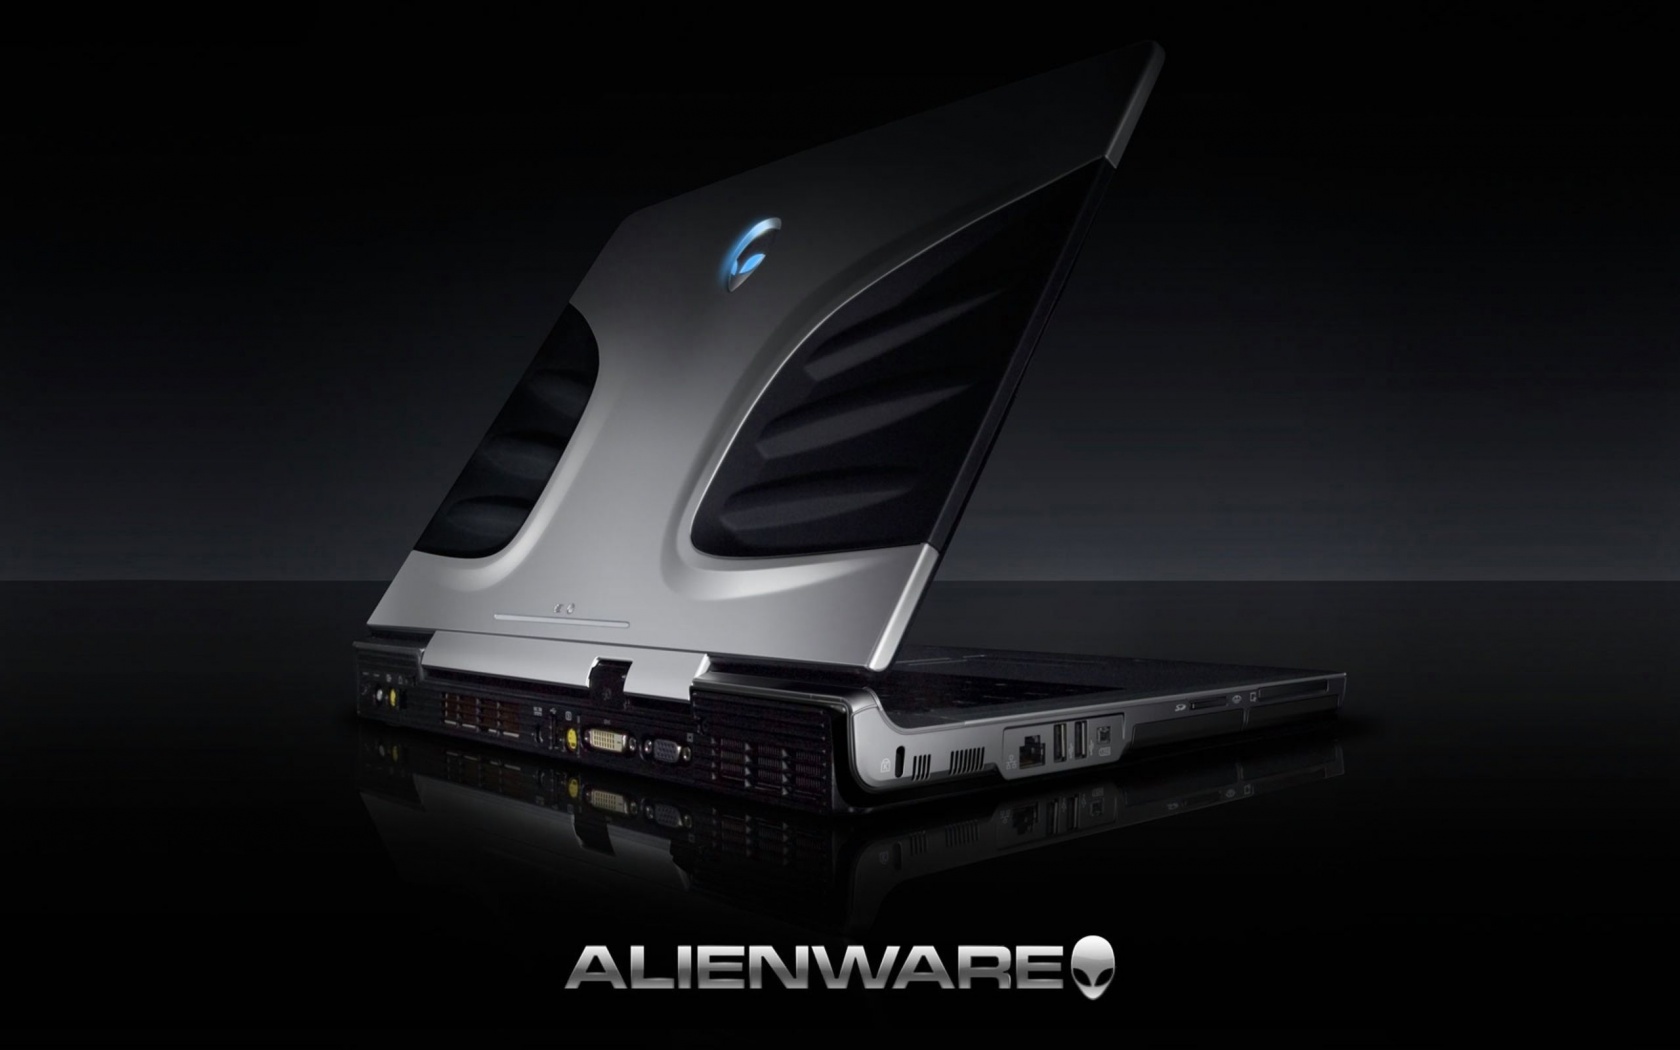 Alienware Brand Notebook Computer